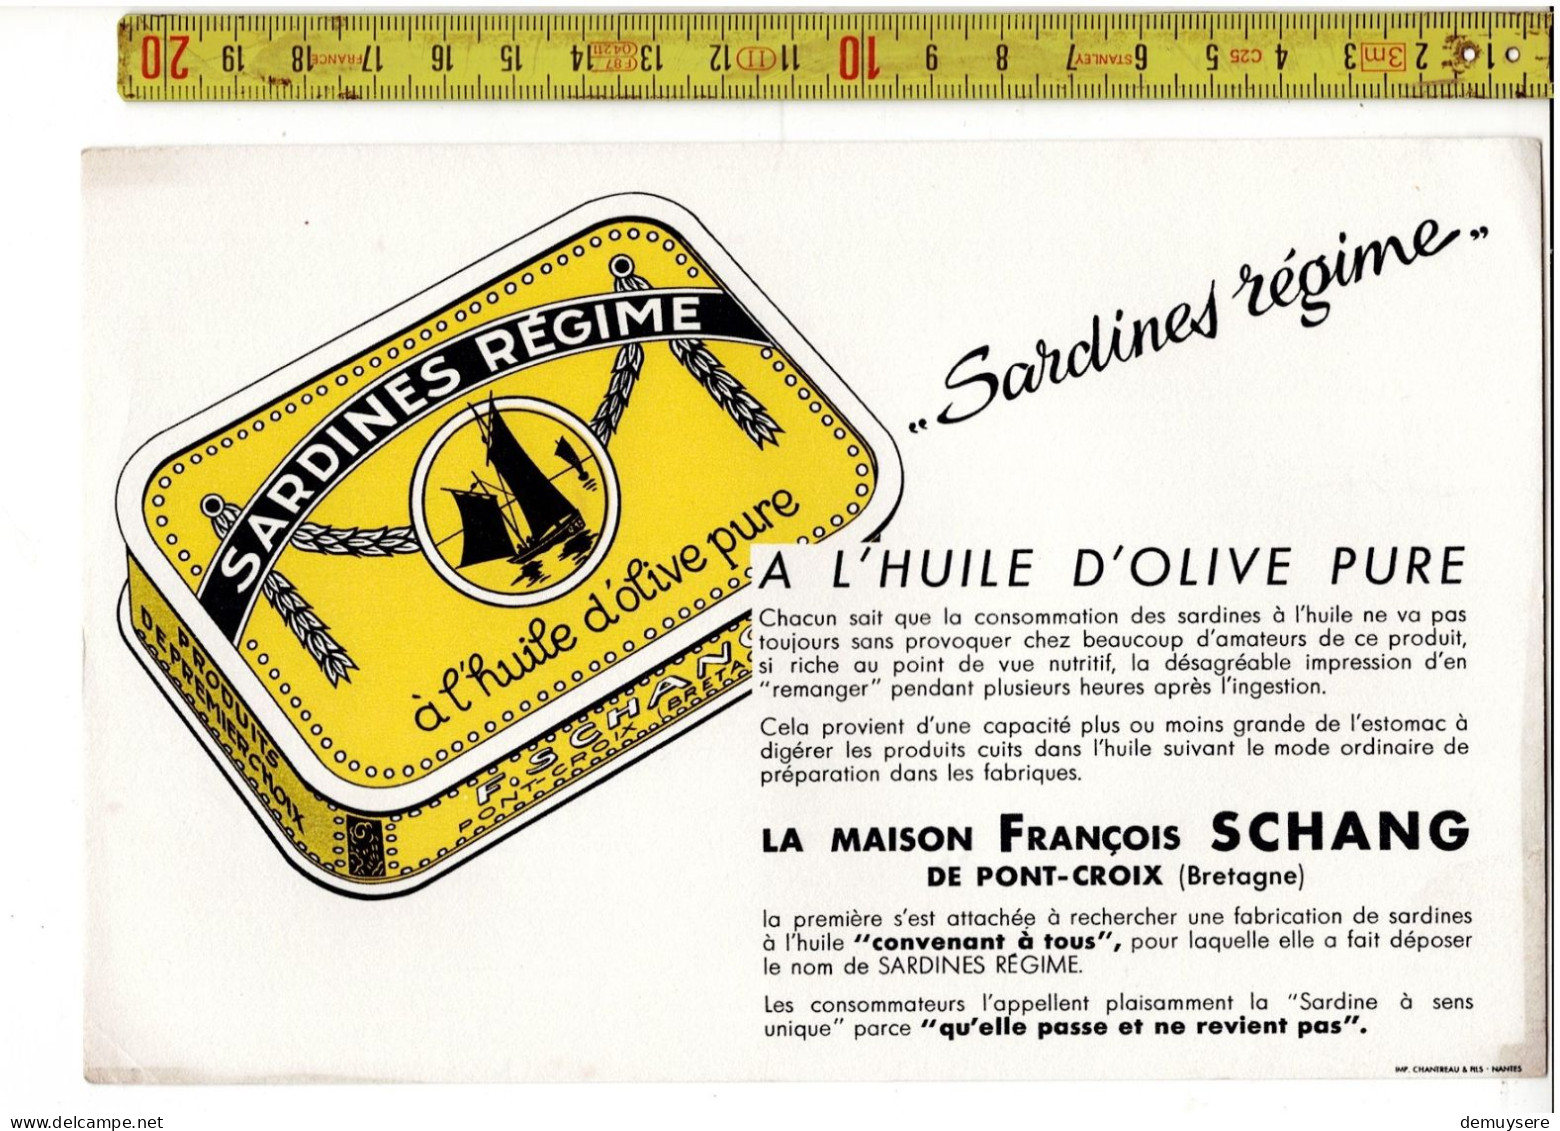 SOLDE 2002 - SARDINES REGIME - LA MAISON FRANCOIS SCHANG DE PONT CROIX BRETAGNE - Advertising